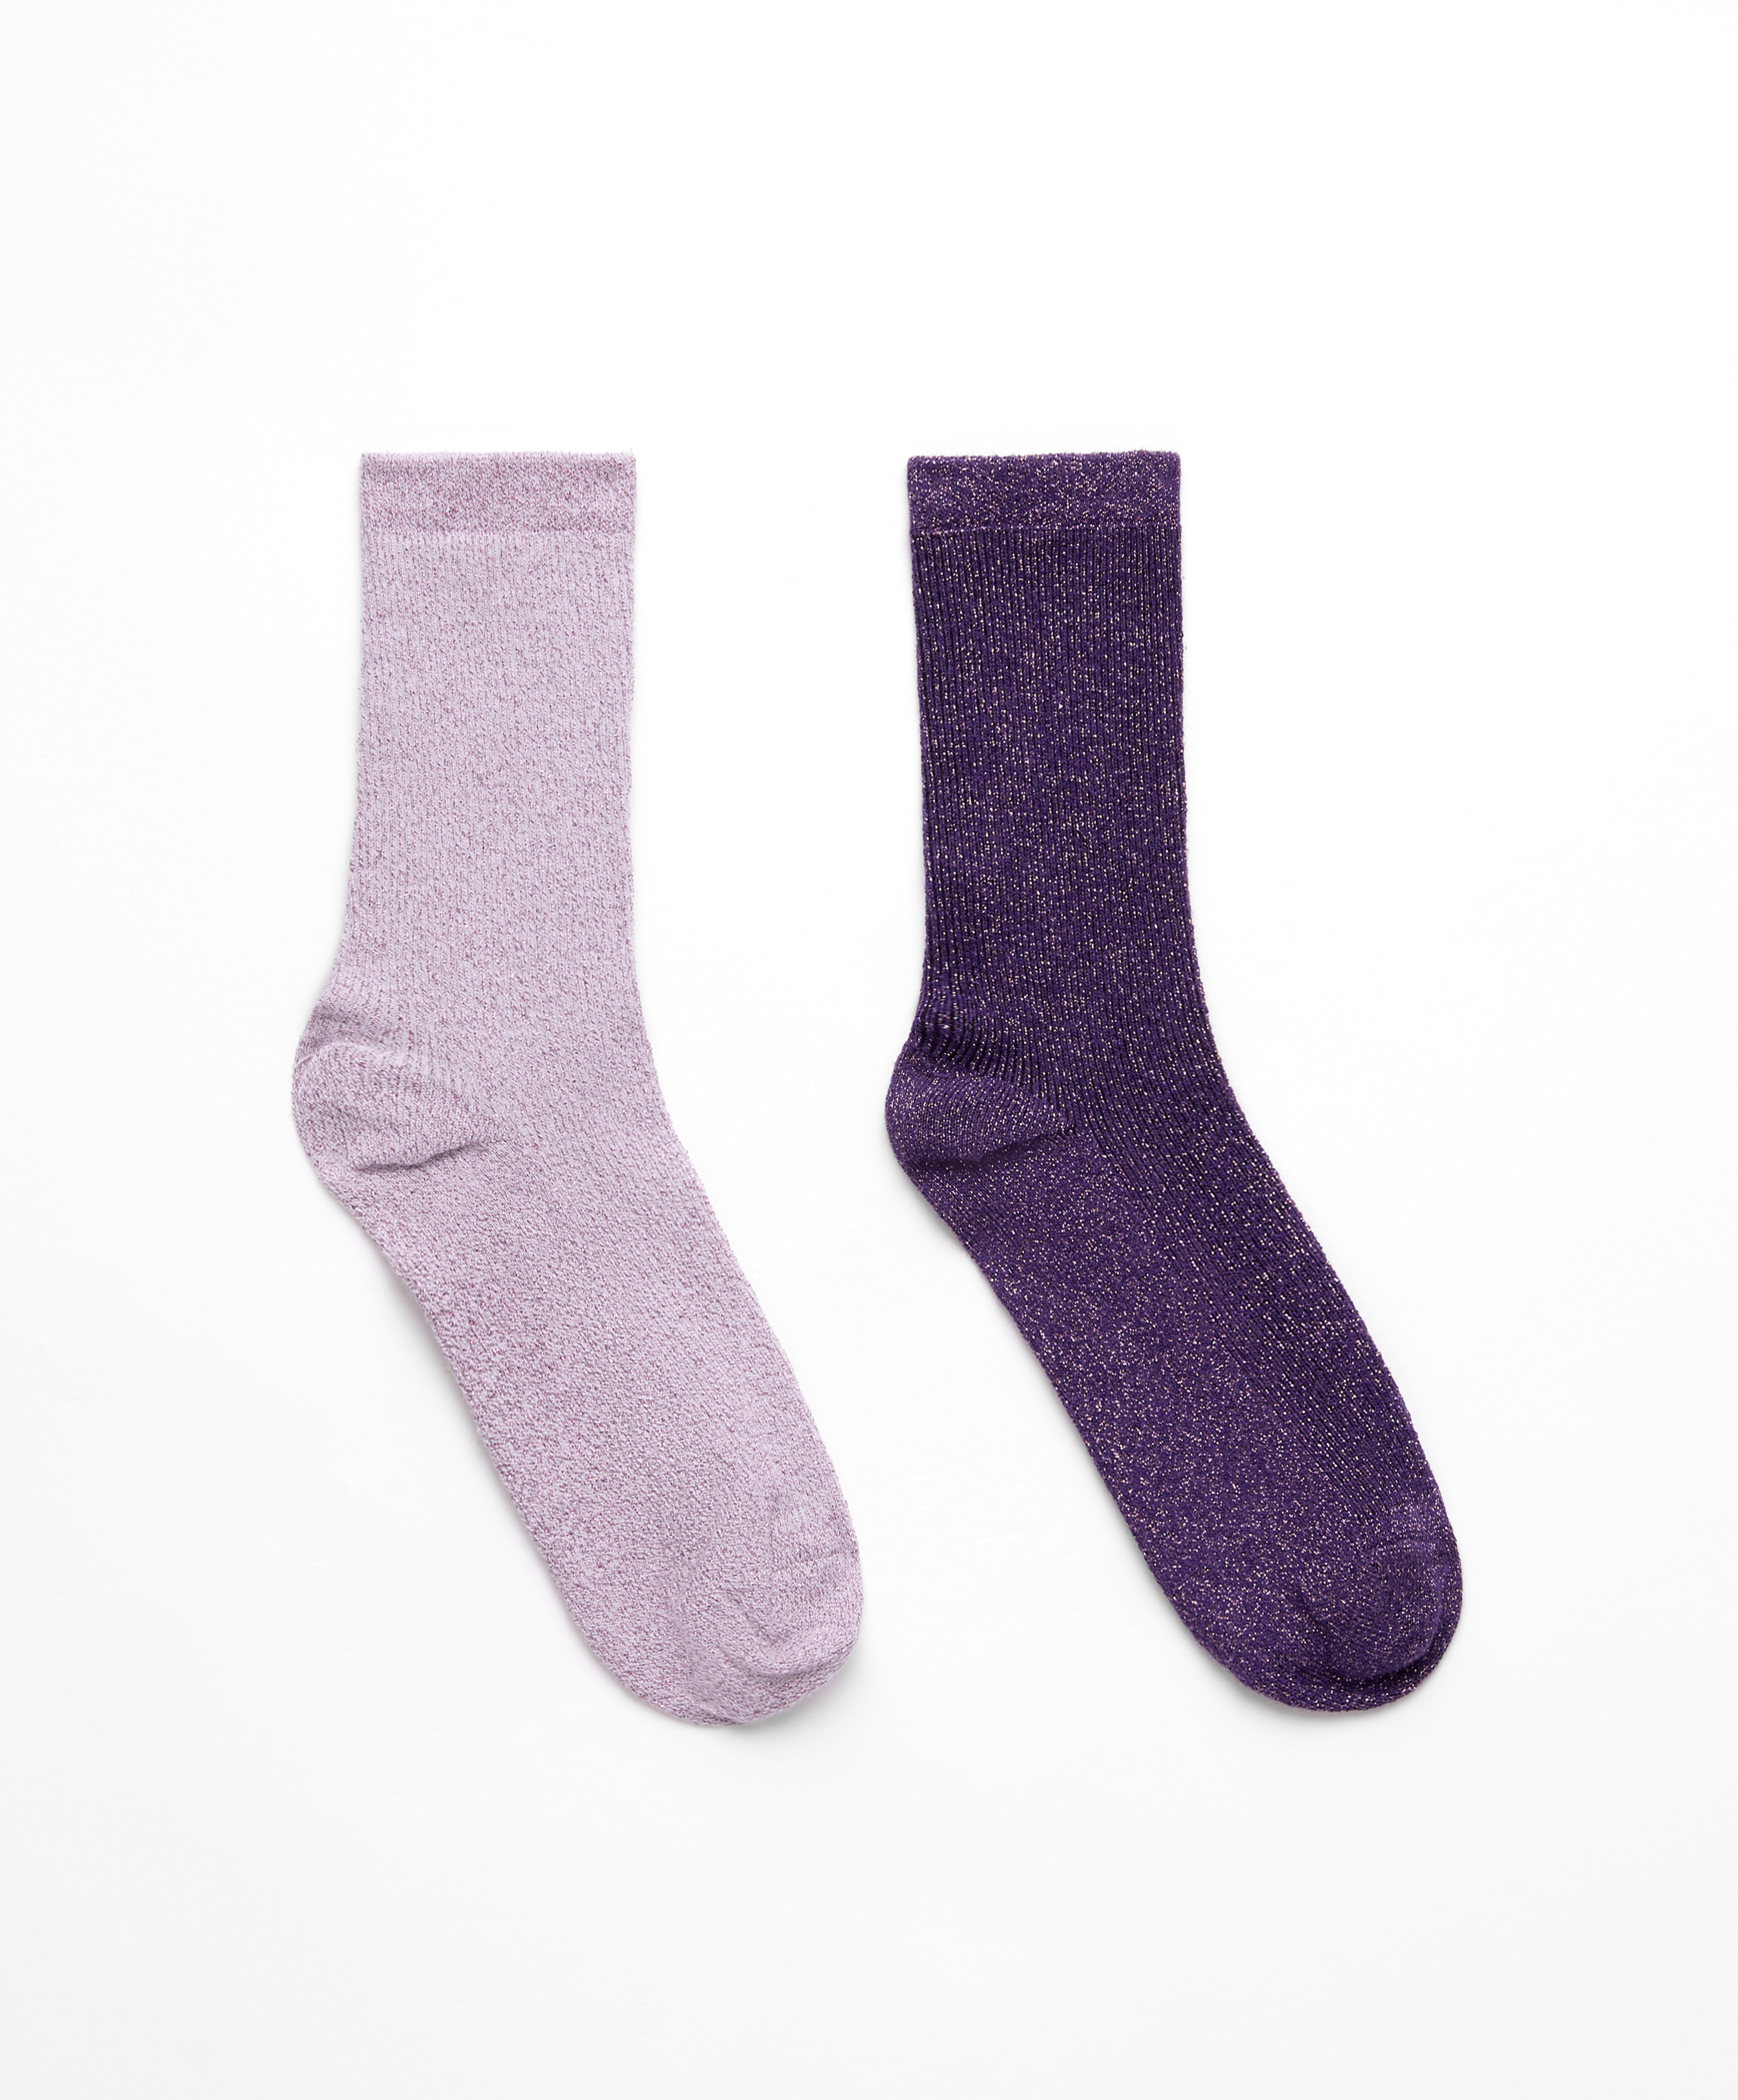 2 paar classic sokken van katoen